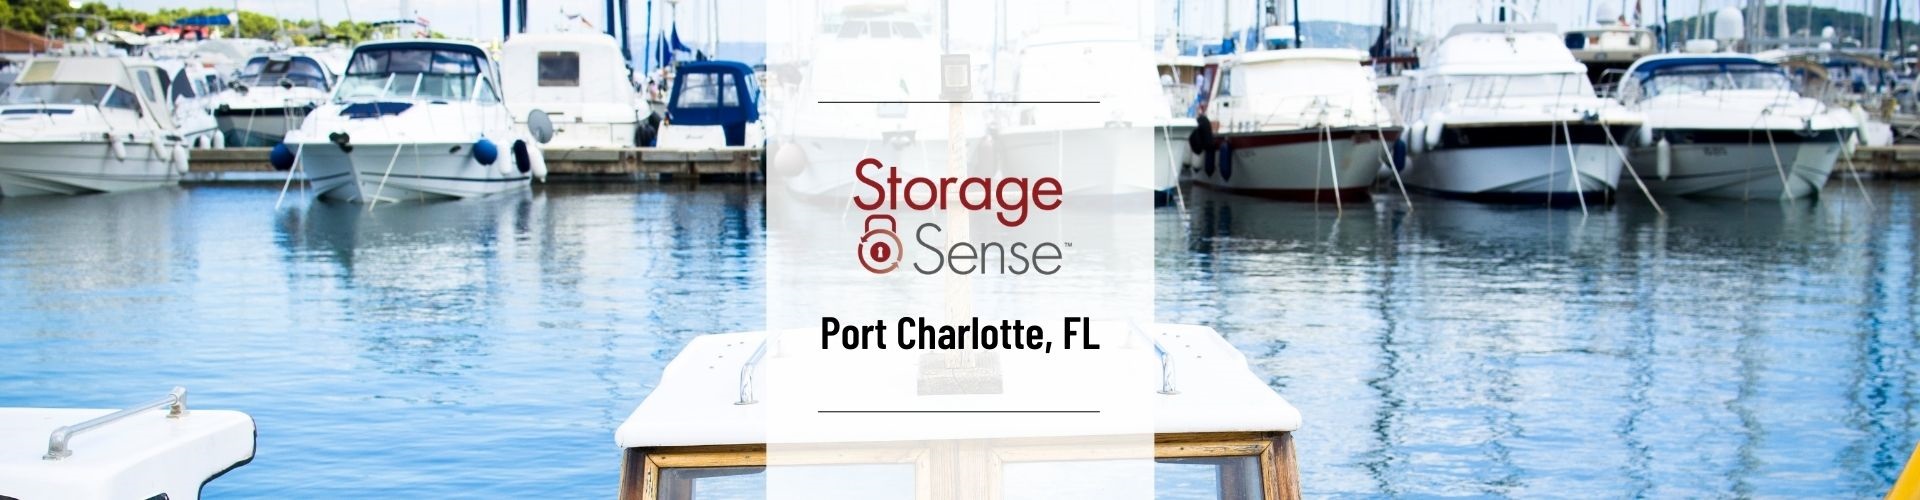 Storage Sense Port Charlotte FL